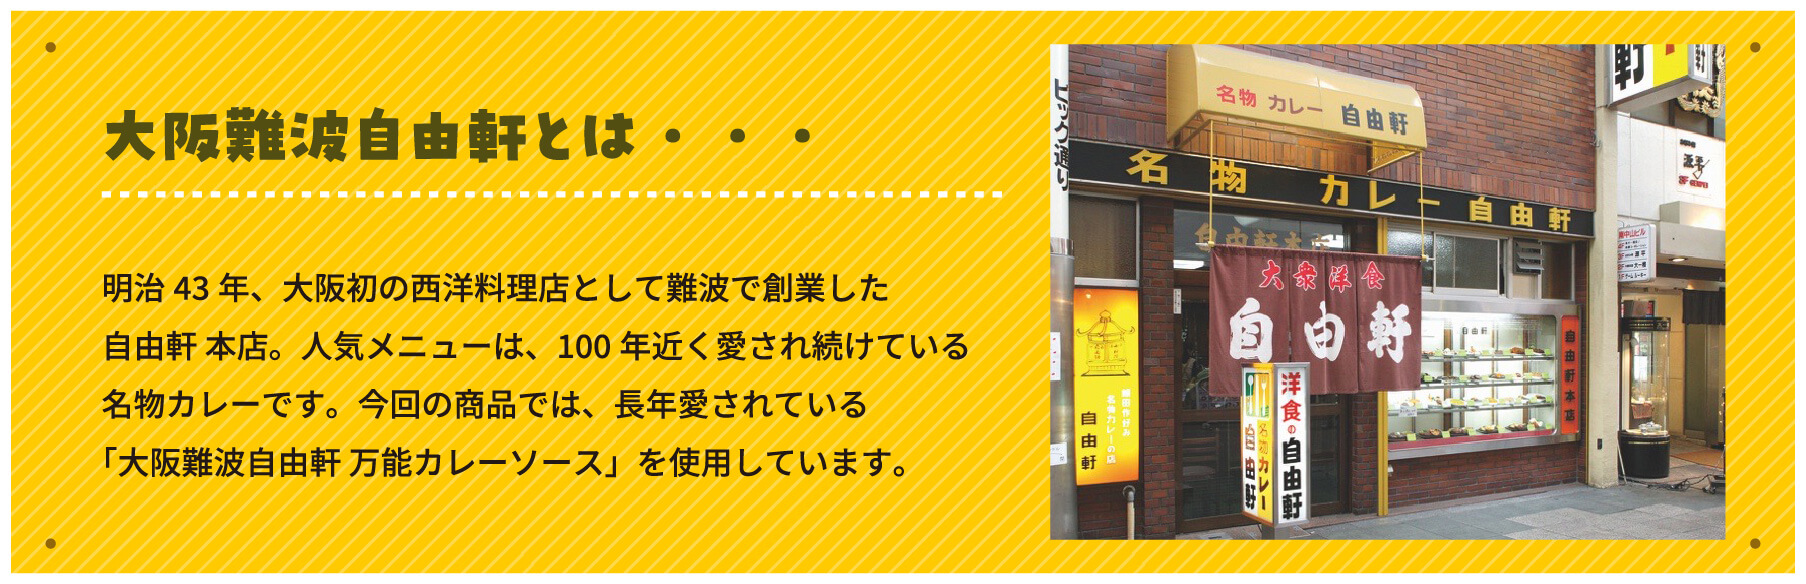 大阪難波自由軒とは・・・明治43年、大阪初の西洋料理店として難波で創業した自由軒 本店。人気メニューは、100年近く愛され続けている名物カレーです。今回の商品では、長年愛されている「大阪難波自由軒 万能カレーソース」を使用しています。
        